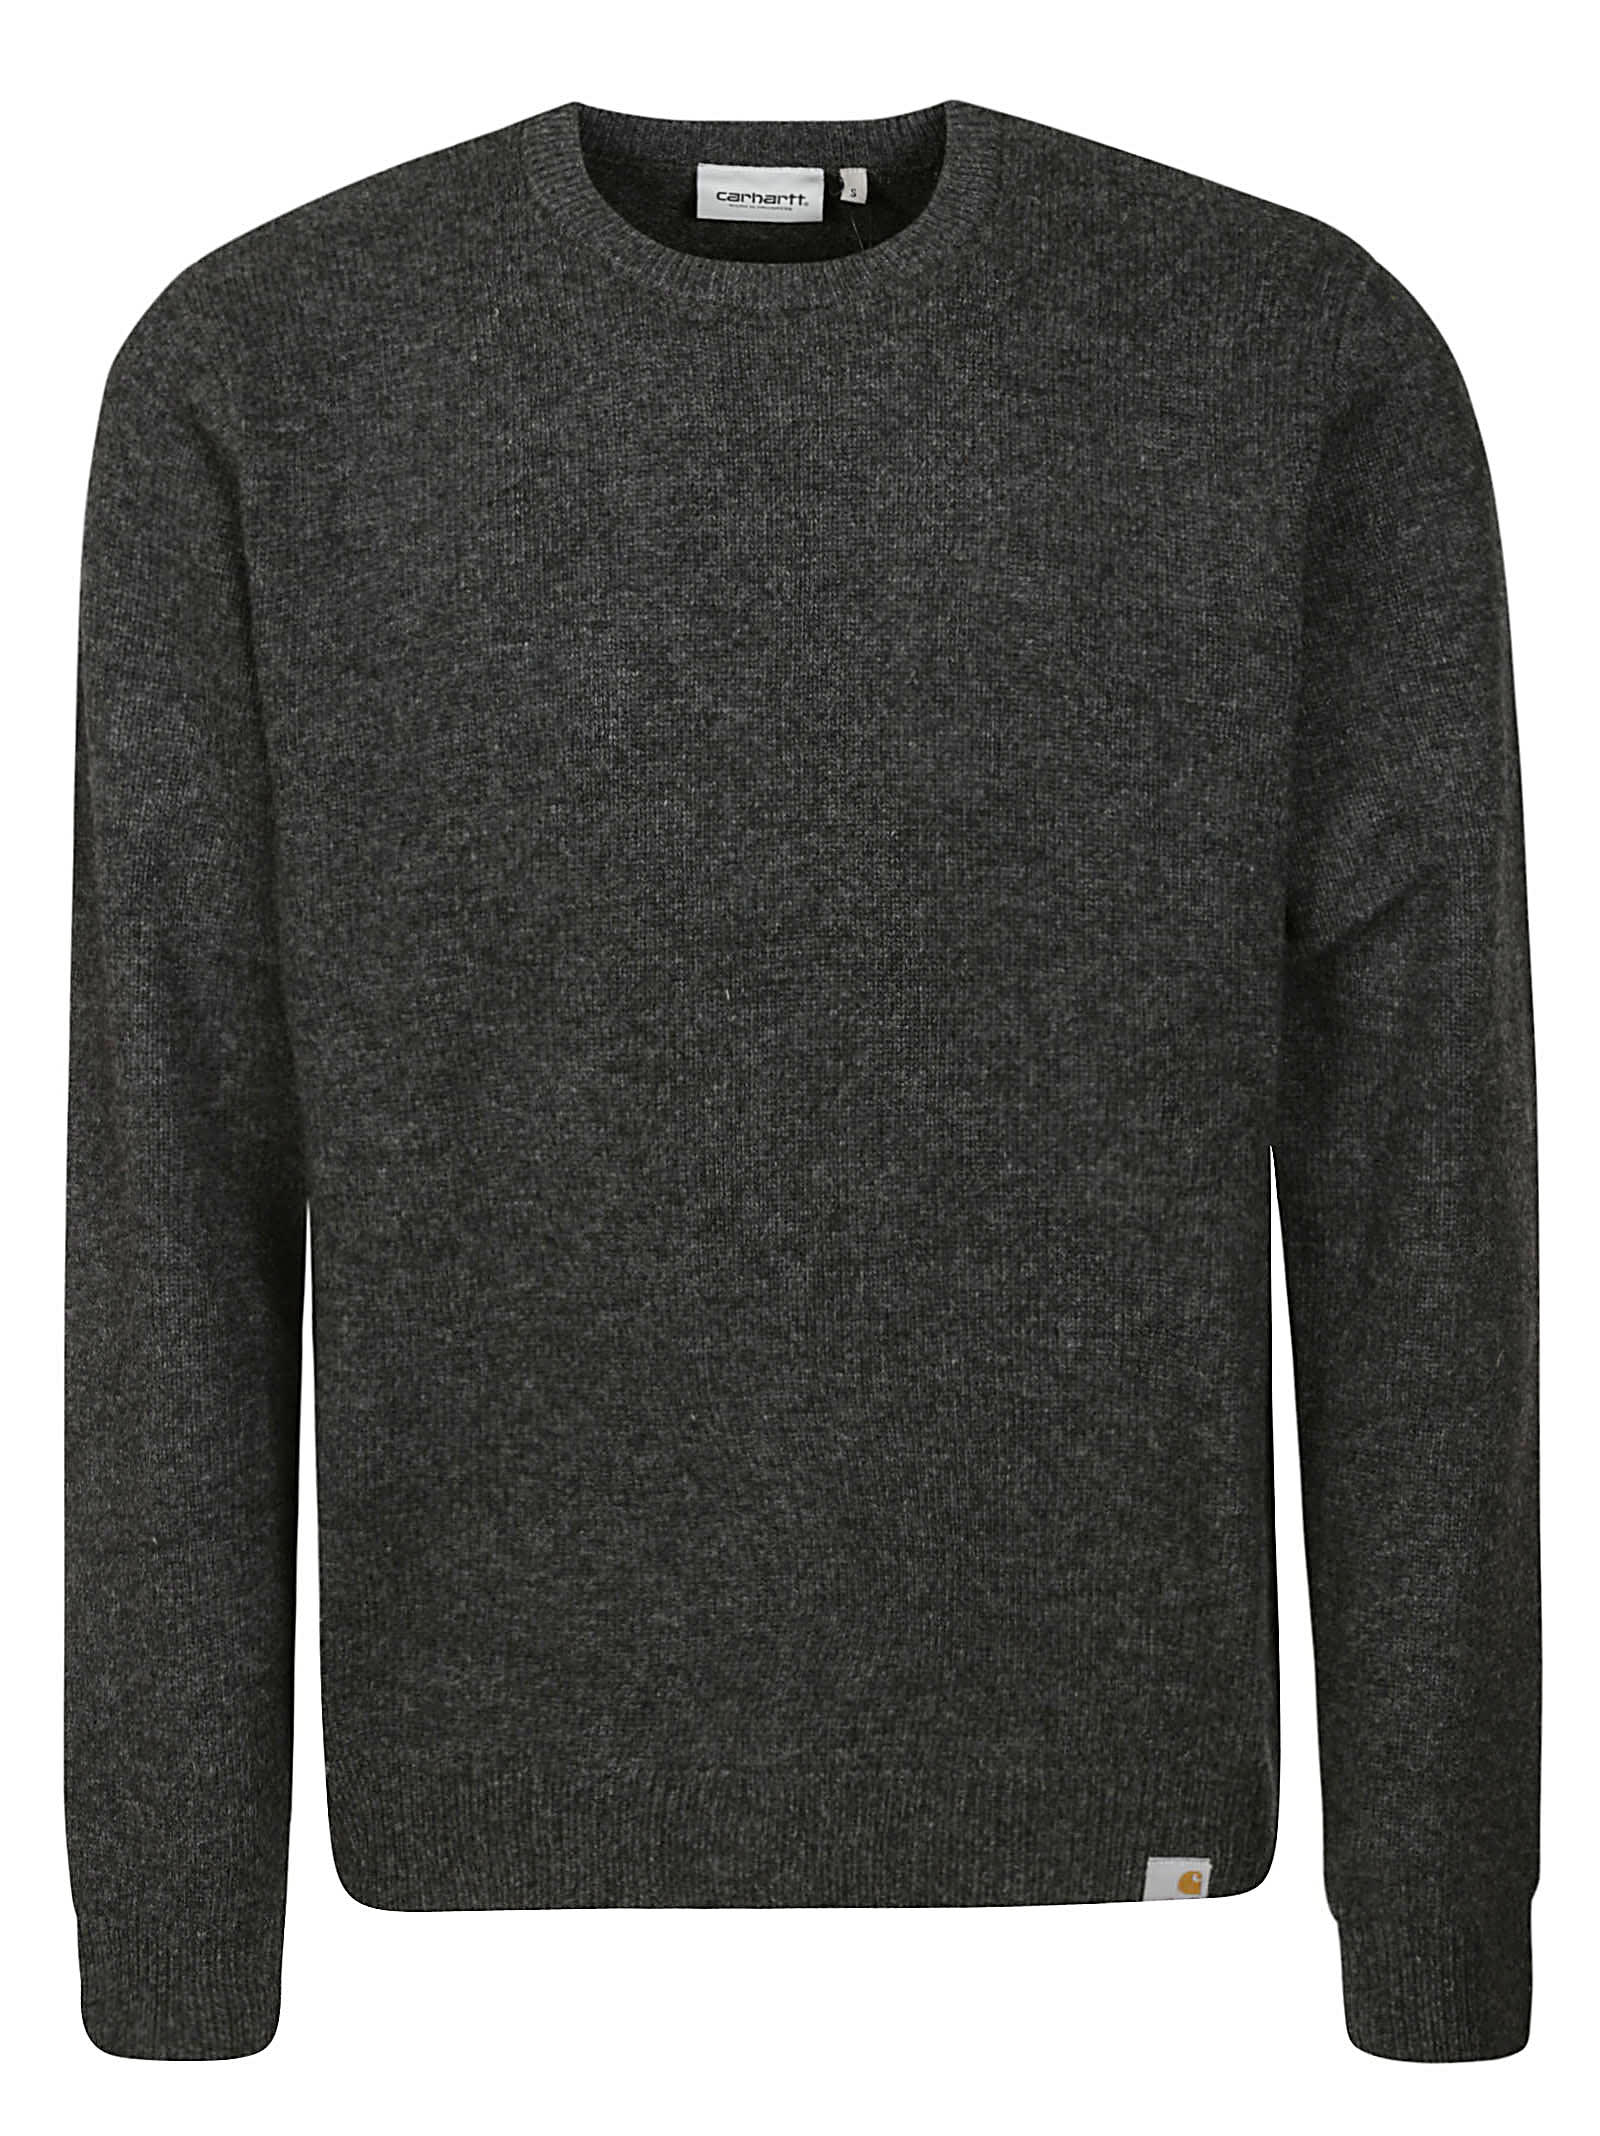 Carhartt Allen Sweater In Btxx Black Heather